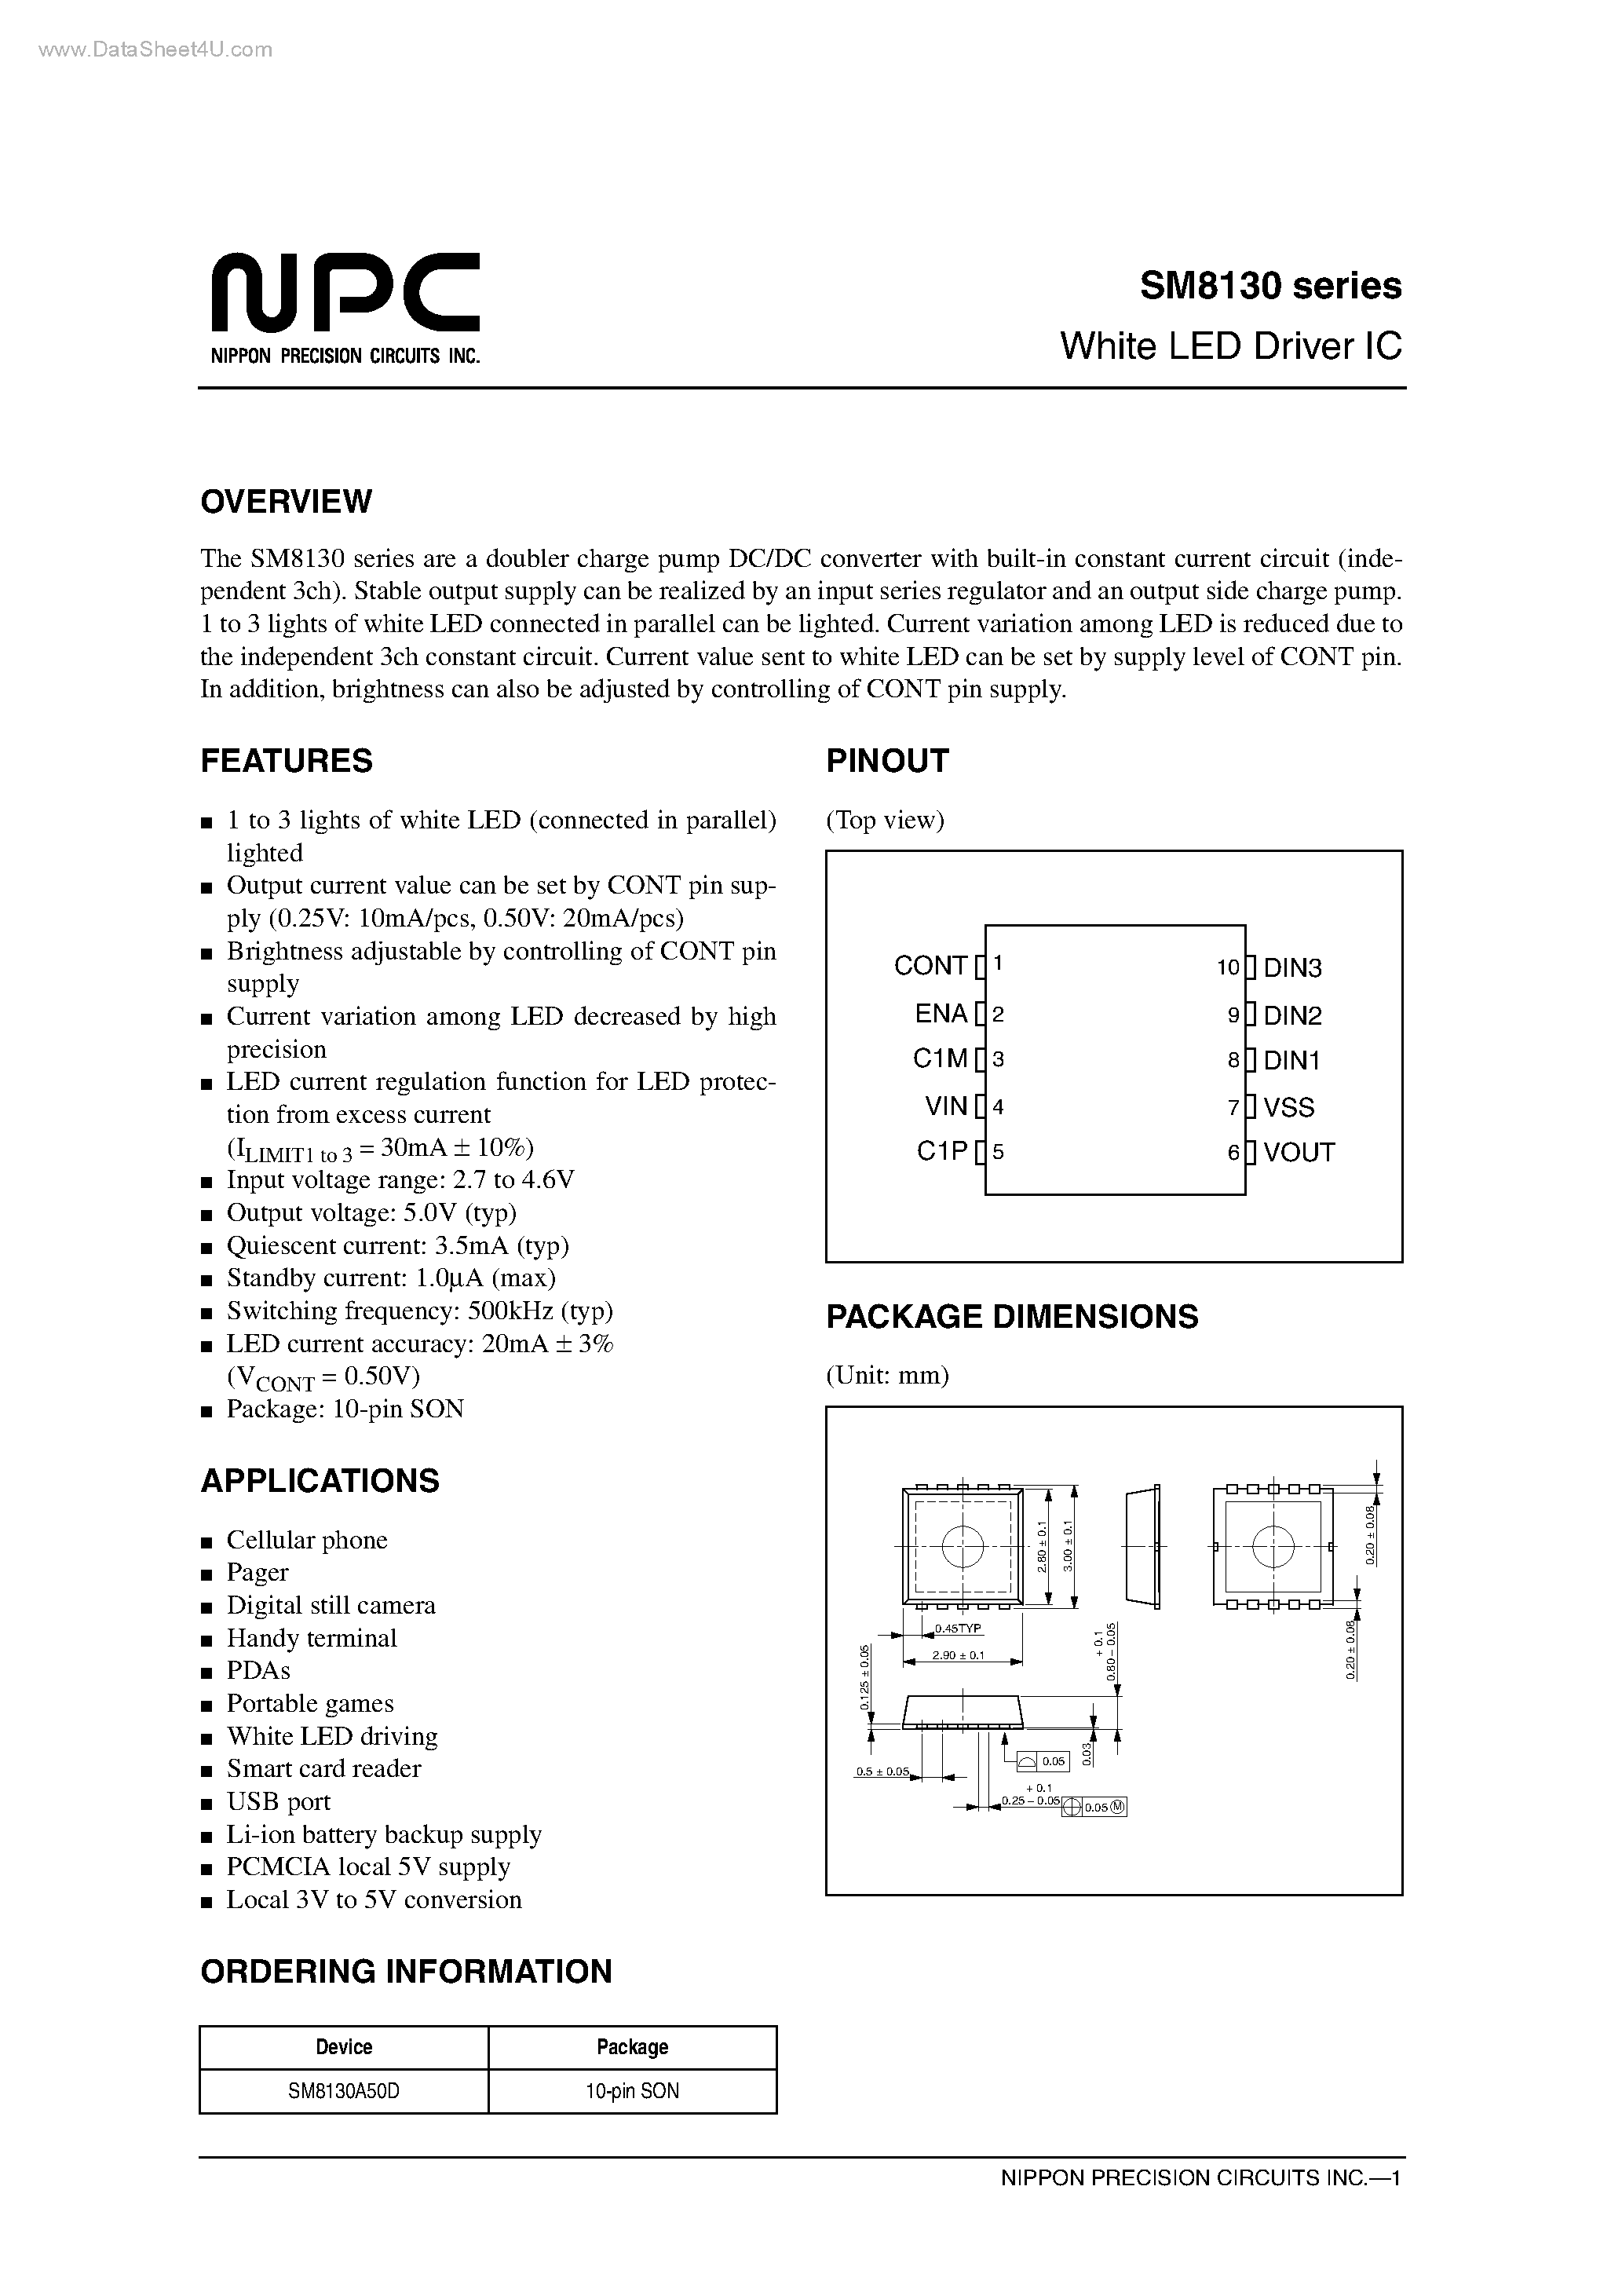 Даташит SM8130 - White LED Driver IC страница 1